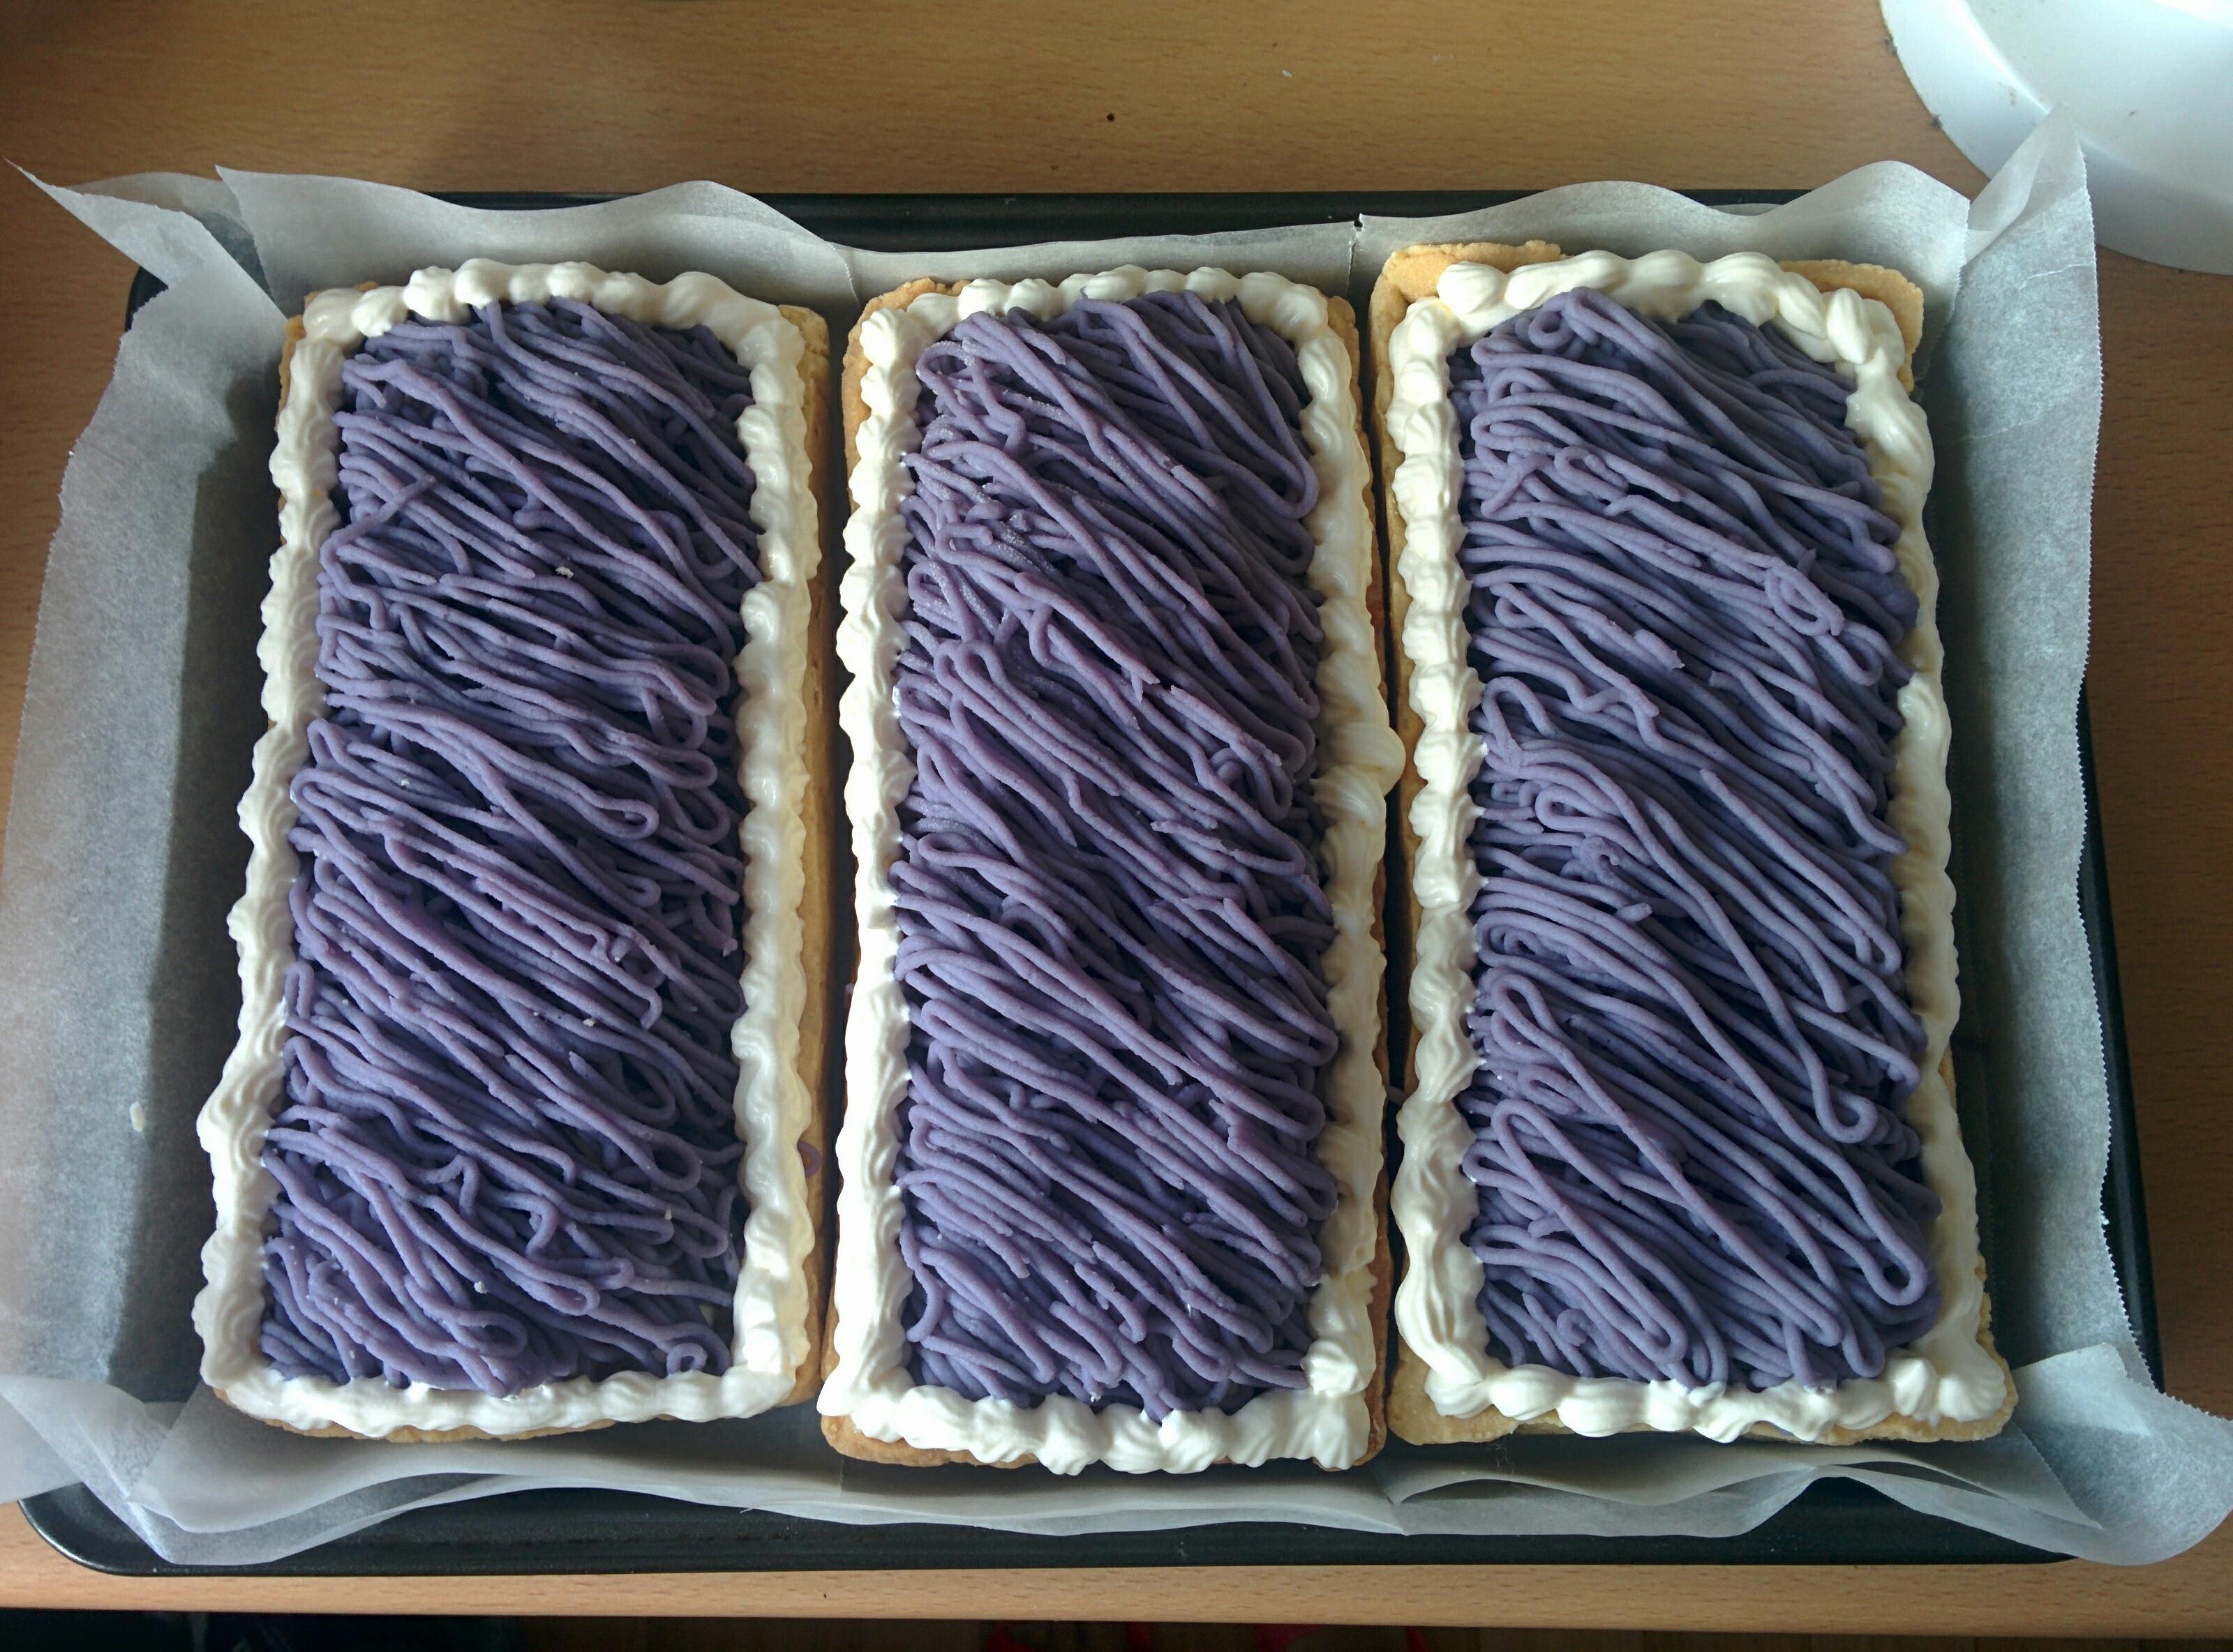 紫薯蒙布朗